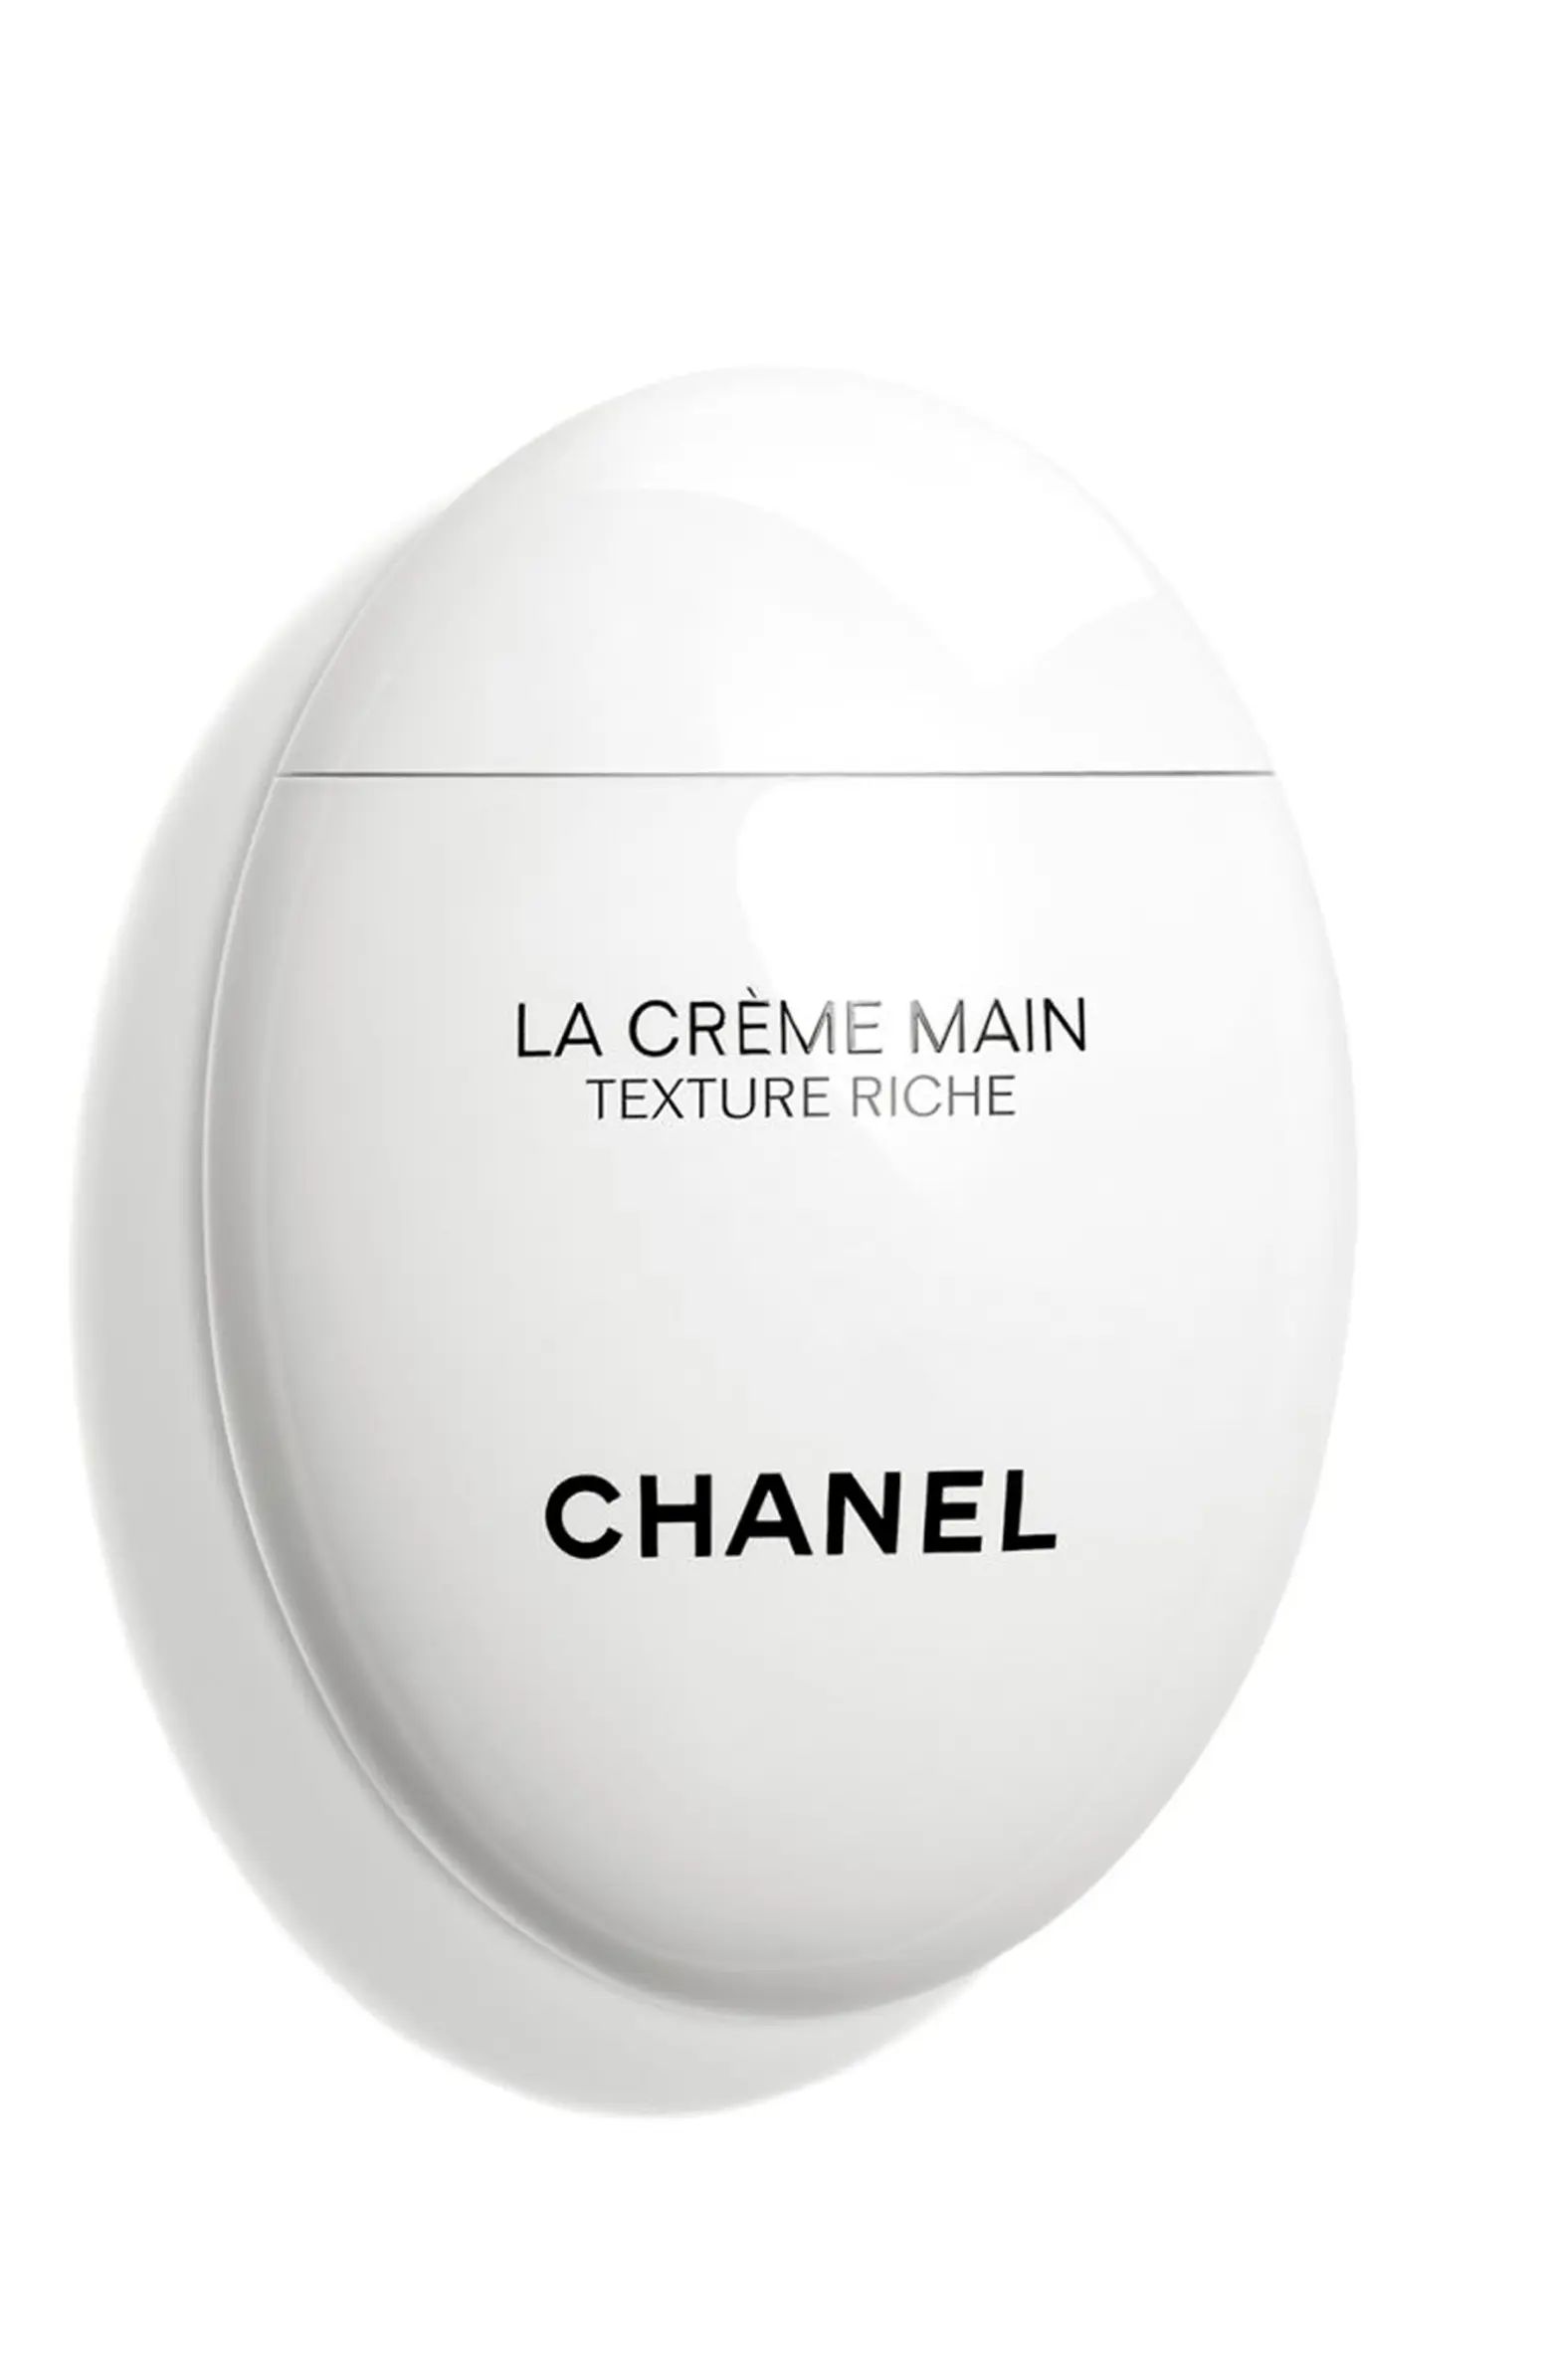 CHANEL LA CREME MAIN TEXTURE RICHE Hand Cream | Nordstrom | Nordstrom